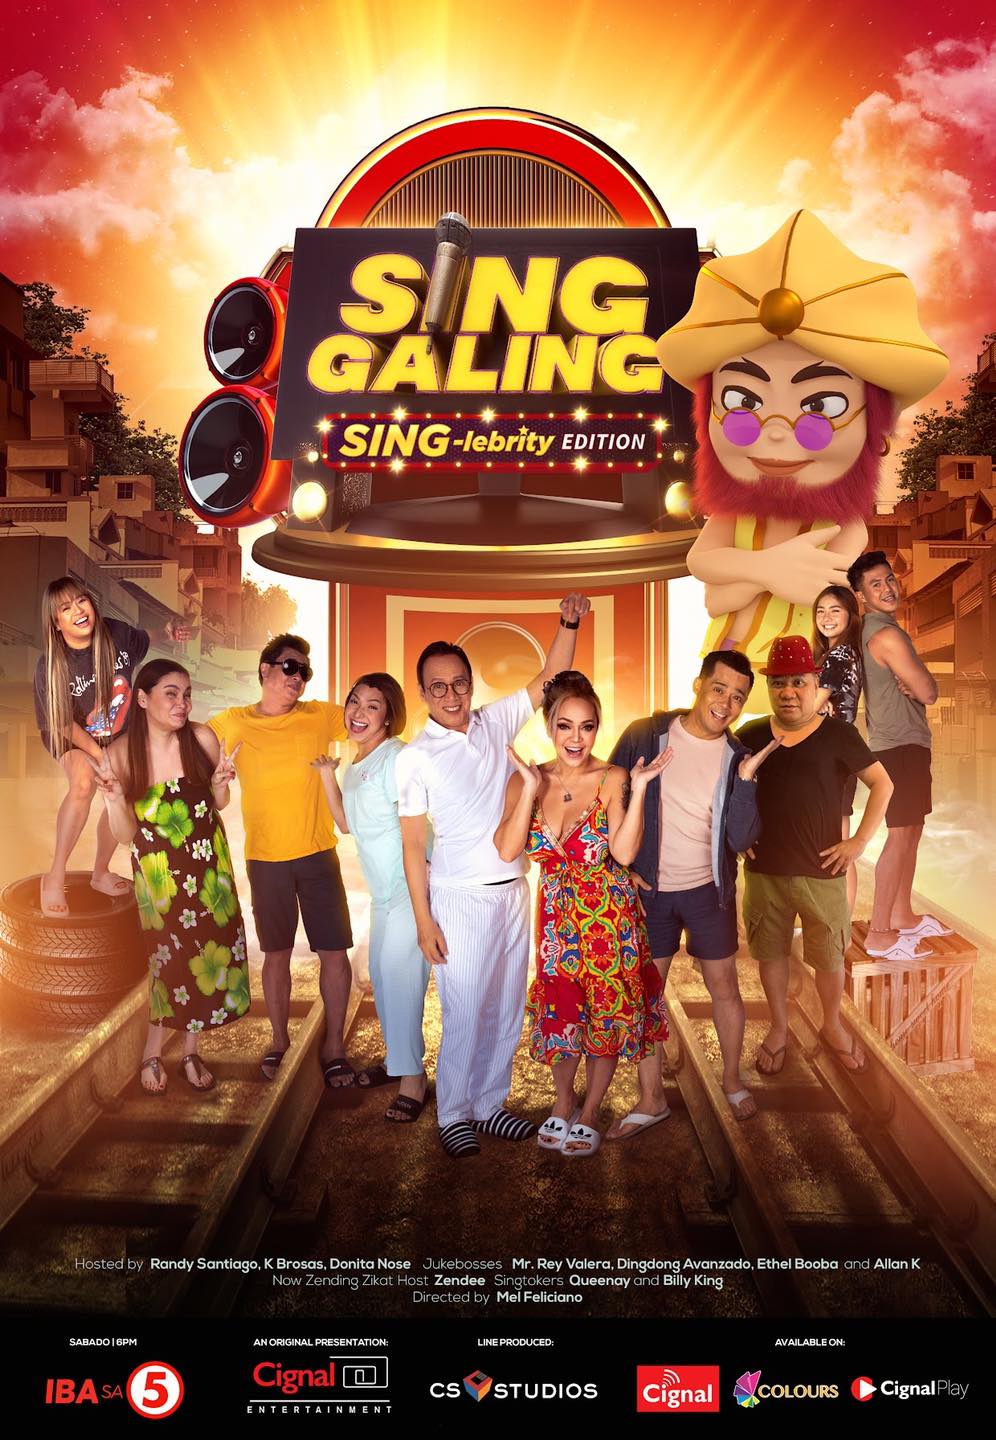 2021-09 – Sing Galing Sing-lebrity edition